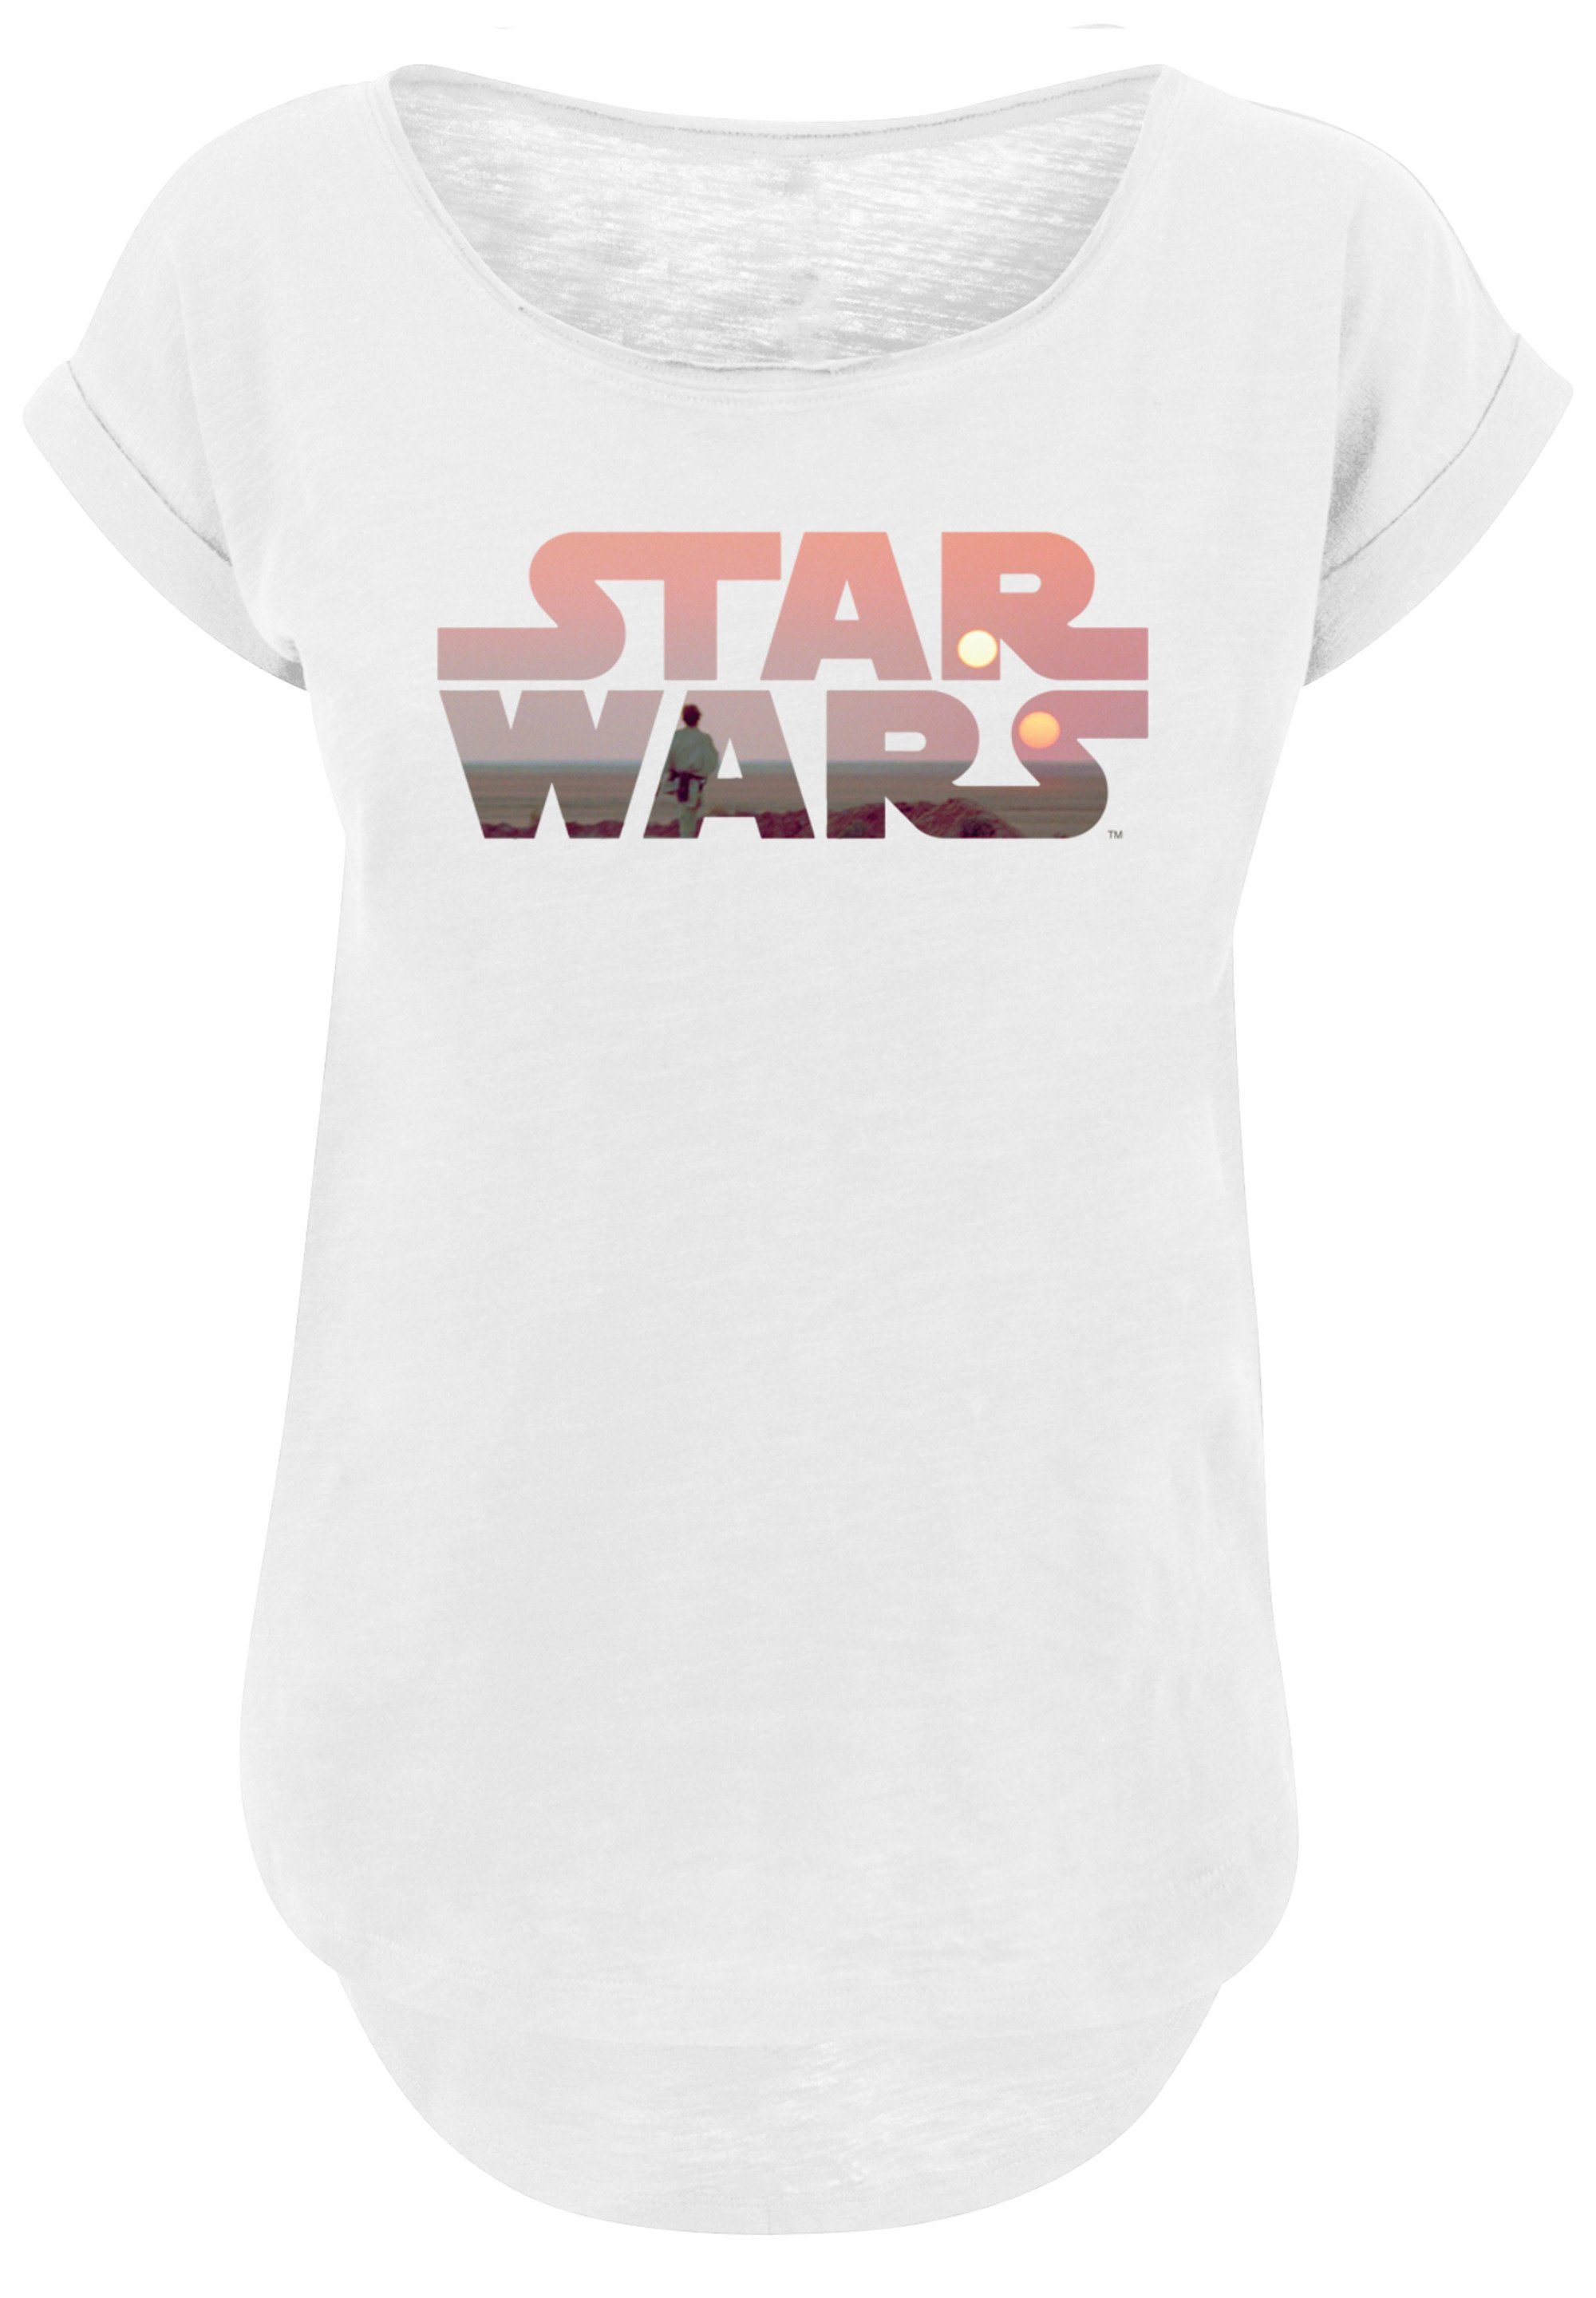 F4NT4STIC T-Shirt Star Wars Tatooine mit Sehr weicher Logo Print, Tragekomfort Baumwollstoff hohem